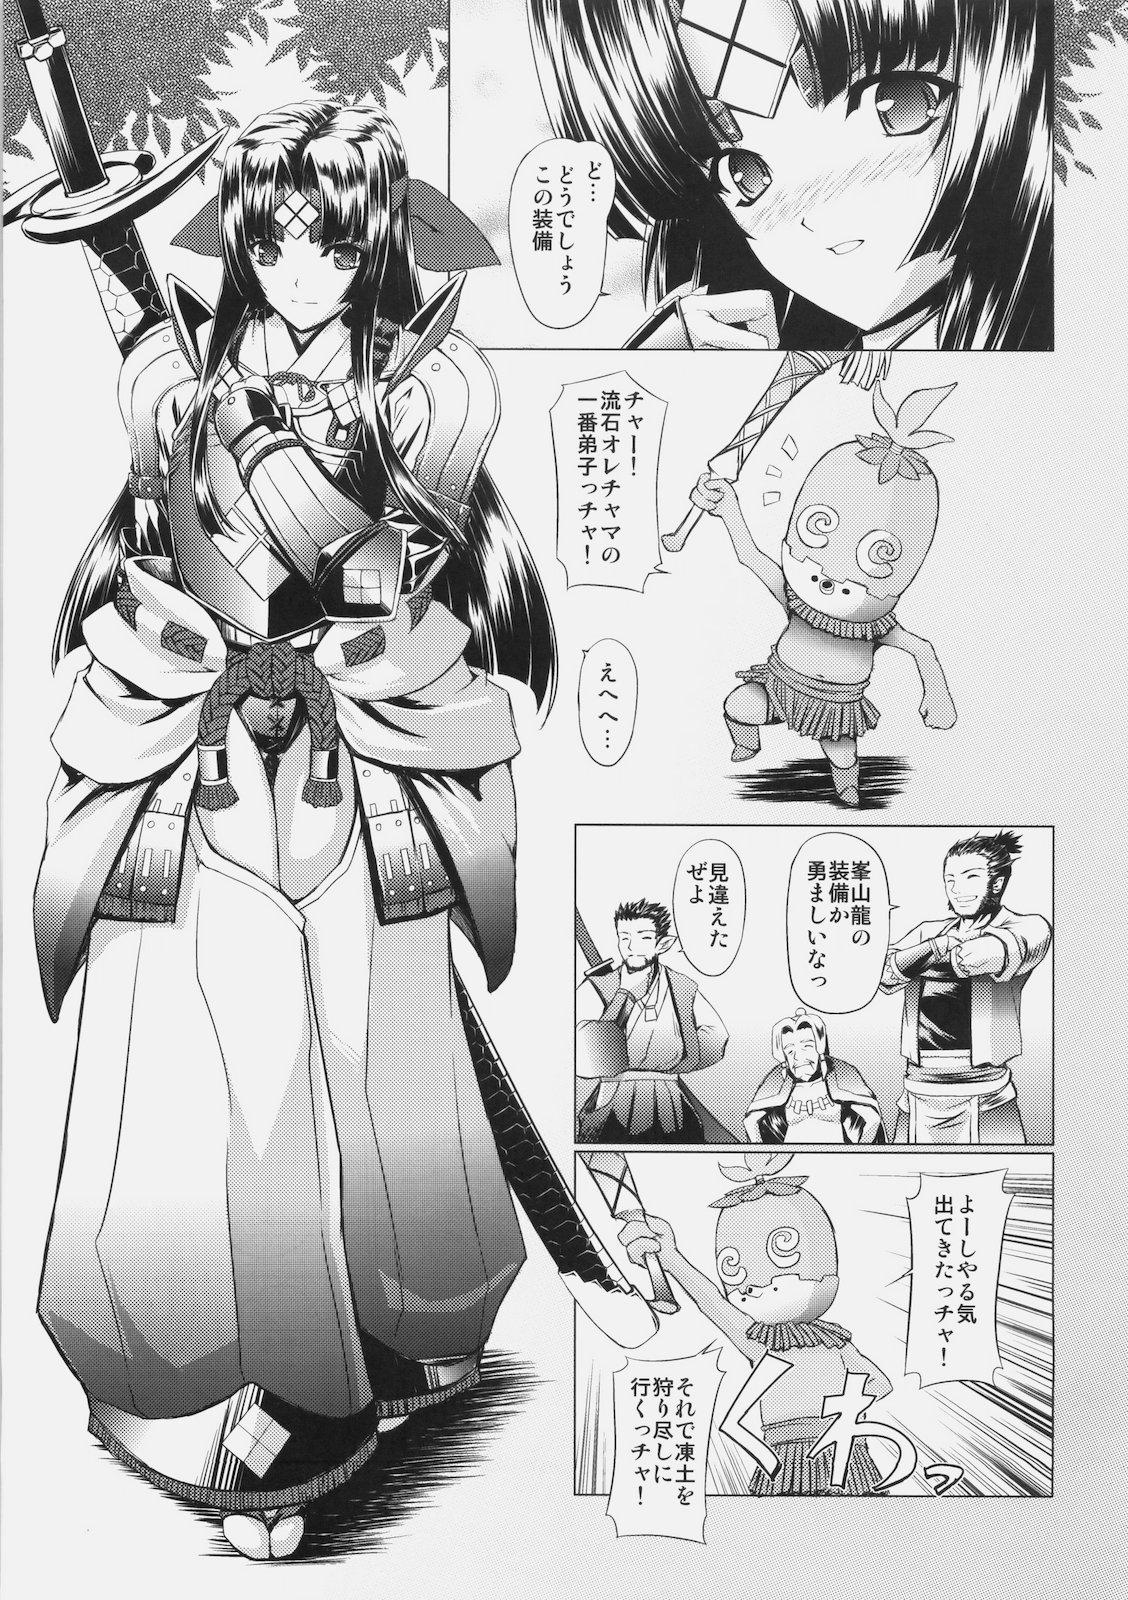 Mmf GigiNebula-san Musou - Monster hunter Art - Page 4